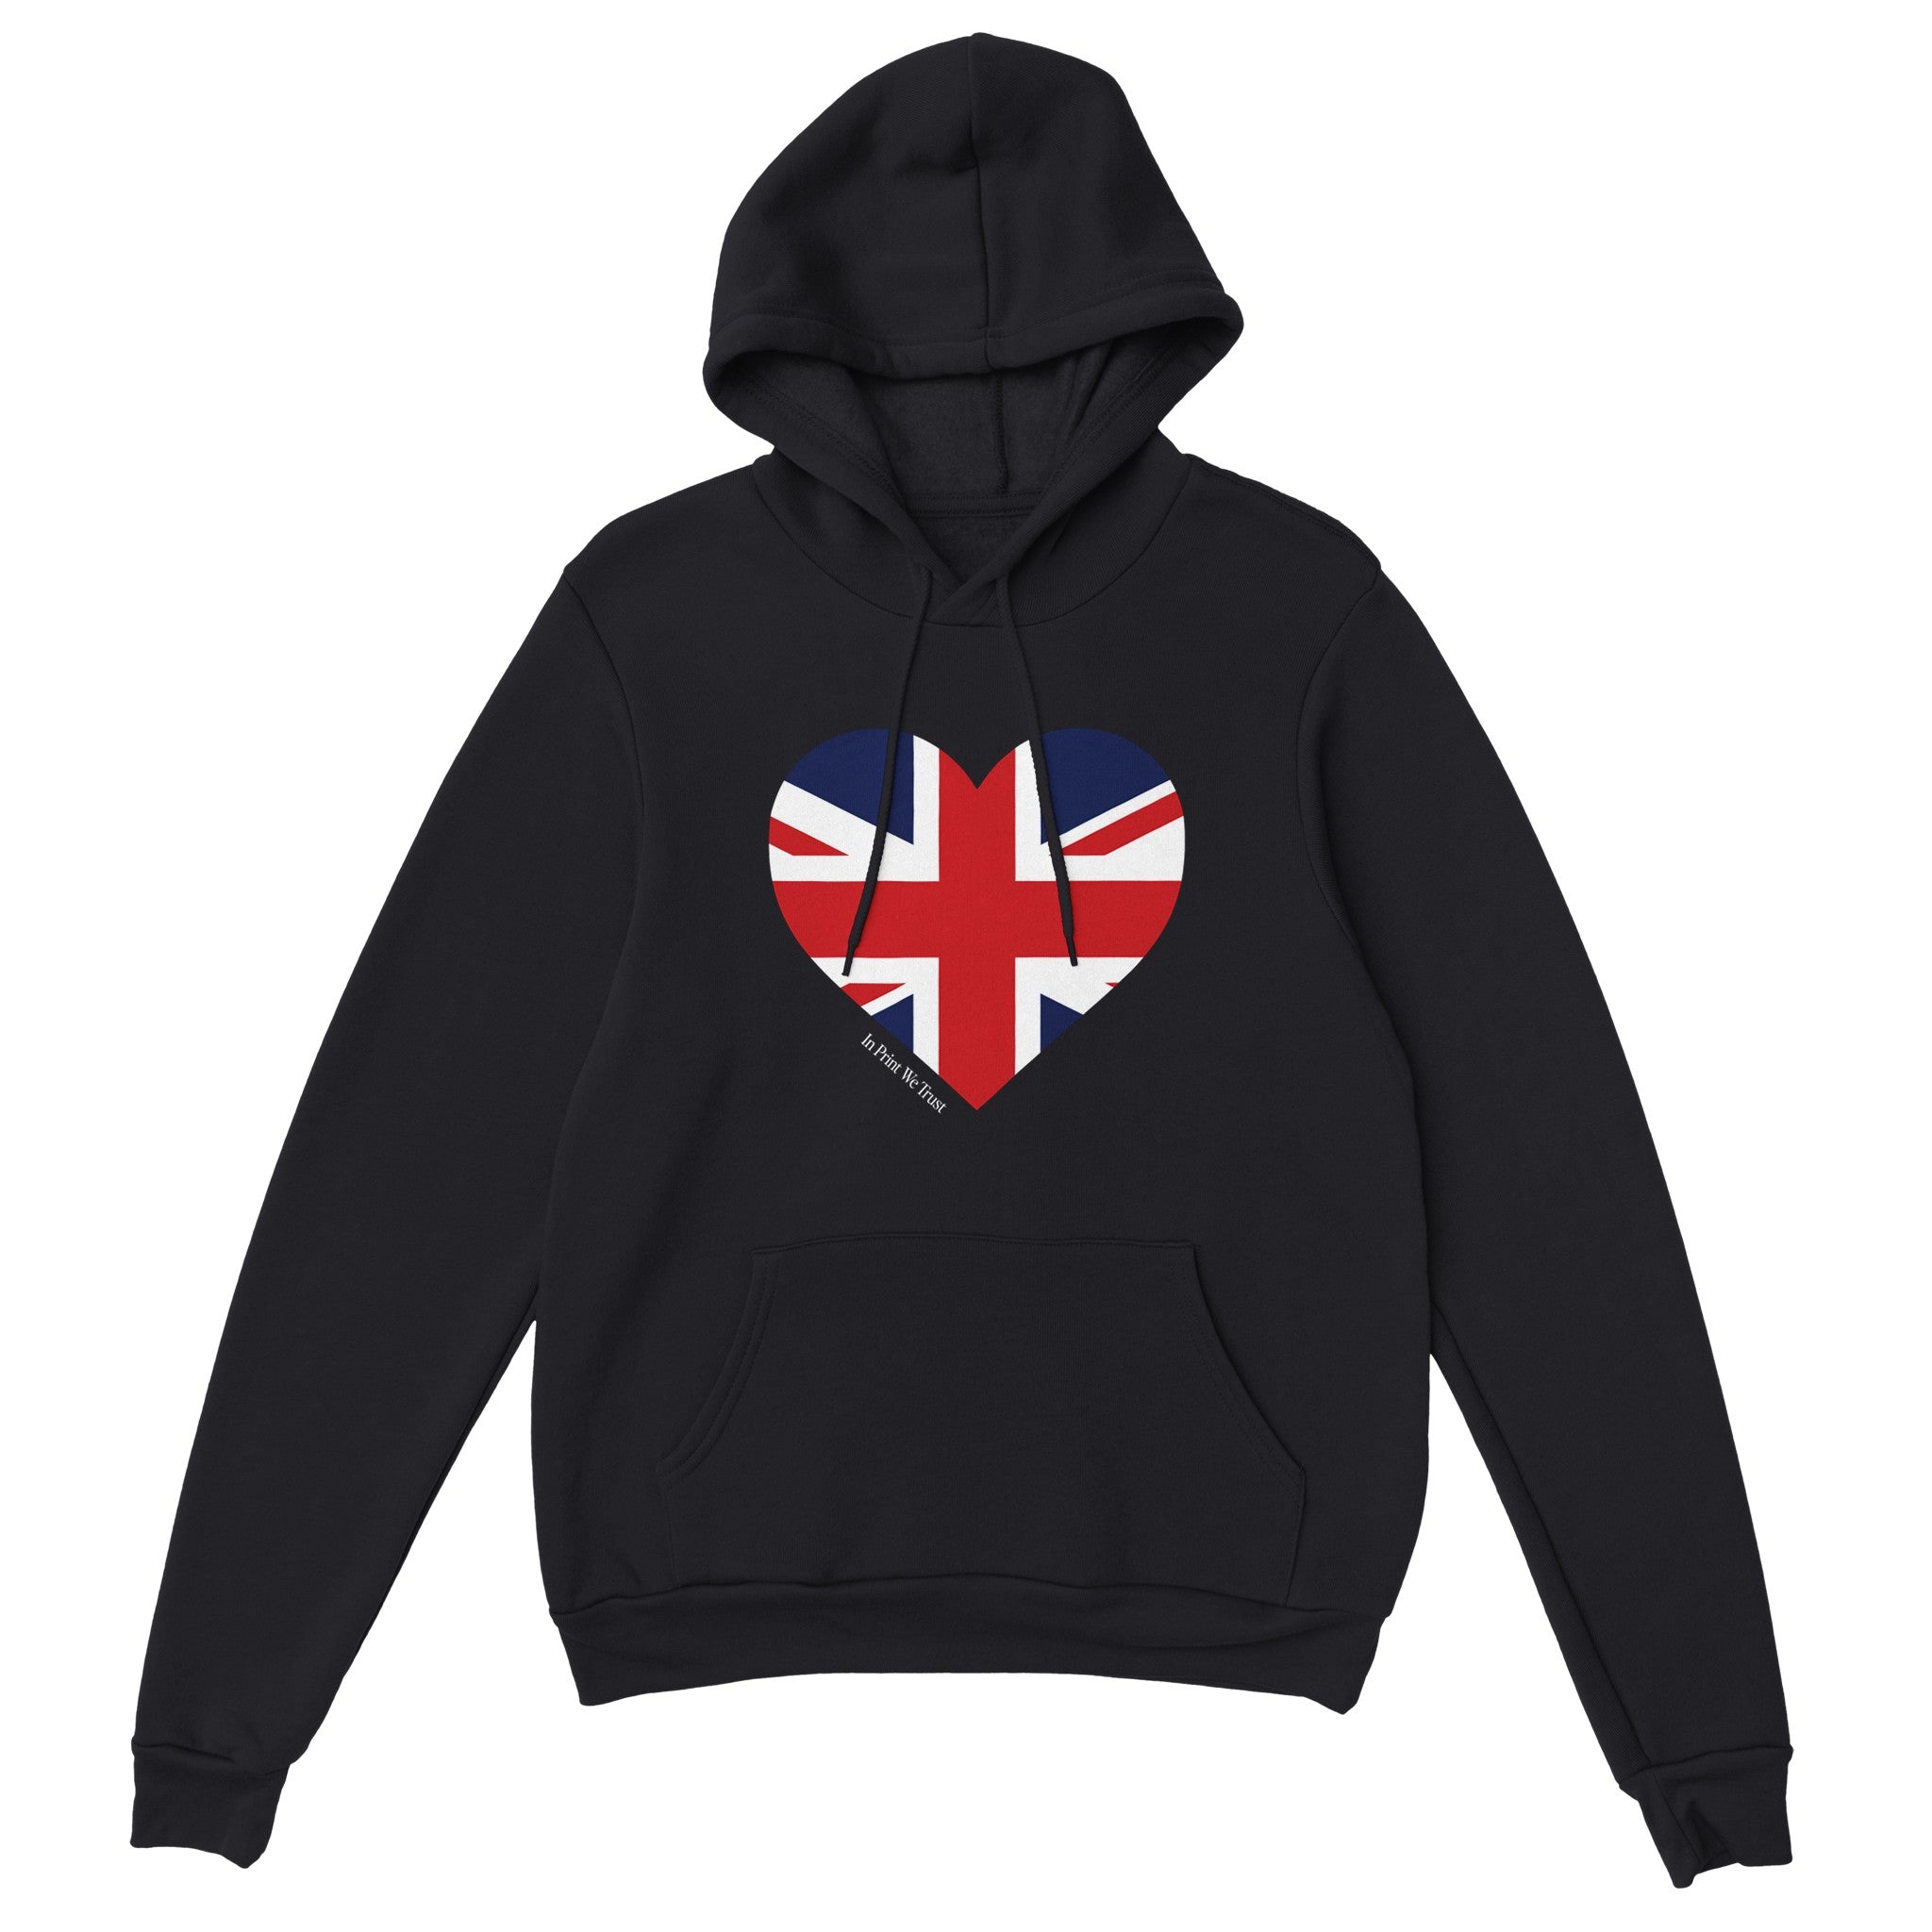 'Great Britain' hoodie - In Print We Trust